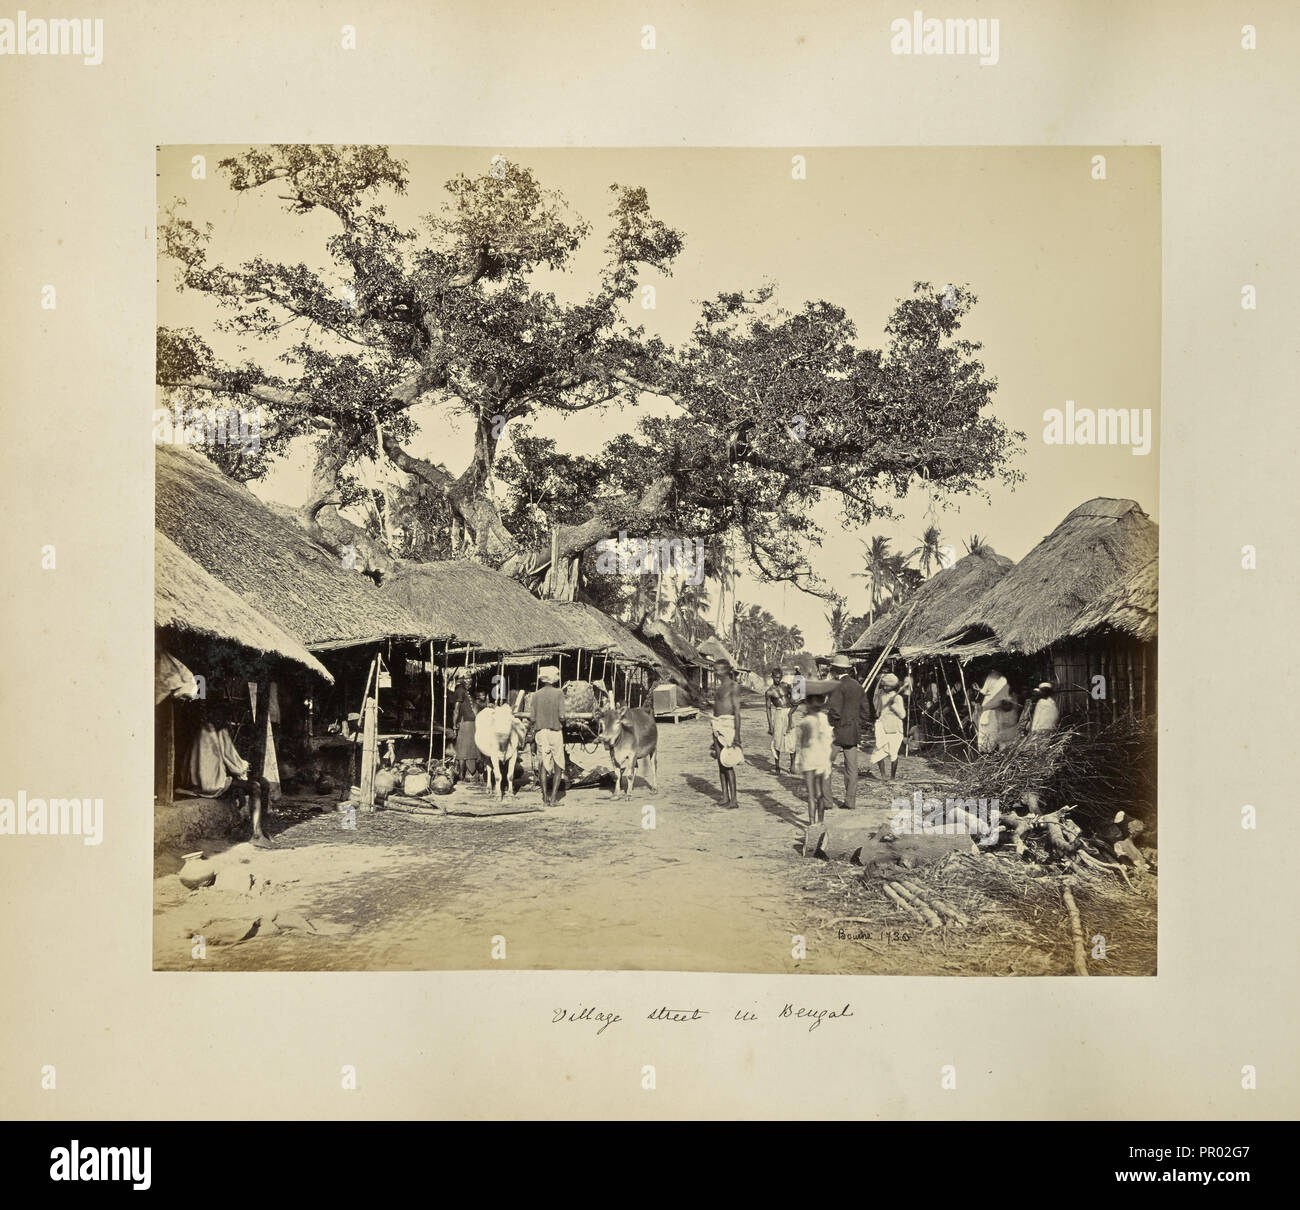 Kalkutta; rustikale Szenen und ländlichen Lebens in Bengalen; Samuel Bourne, Englisch, 1834-1912, Kolkata, West Bengal, Indien, Asien Stockfoto